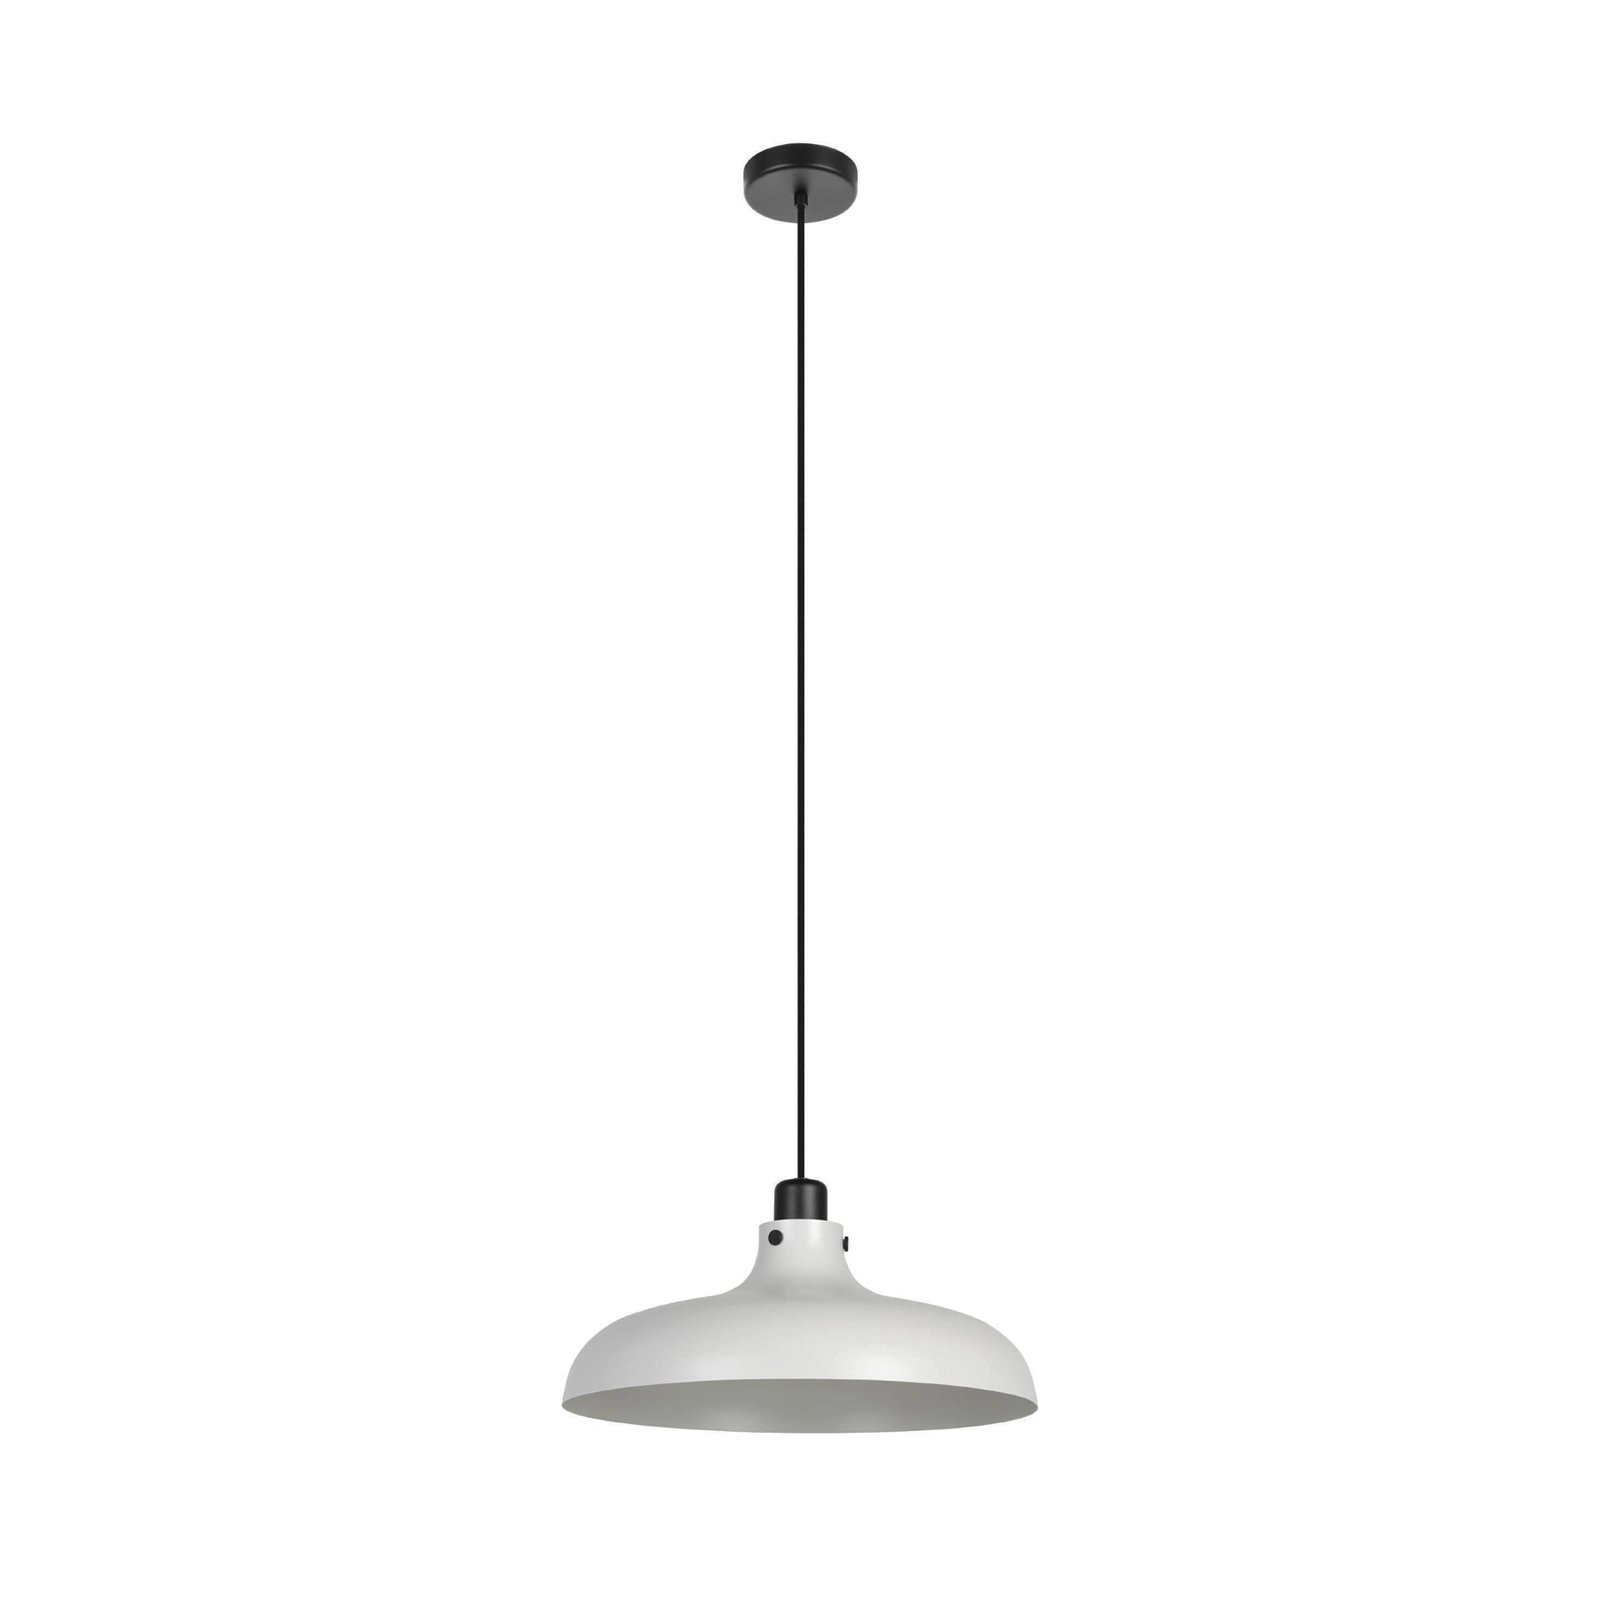 Hanglamp Matlock, Ø 38 cm, grijs/zwart, staal